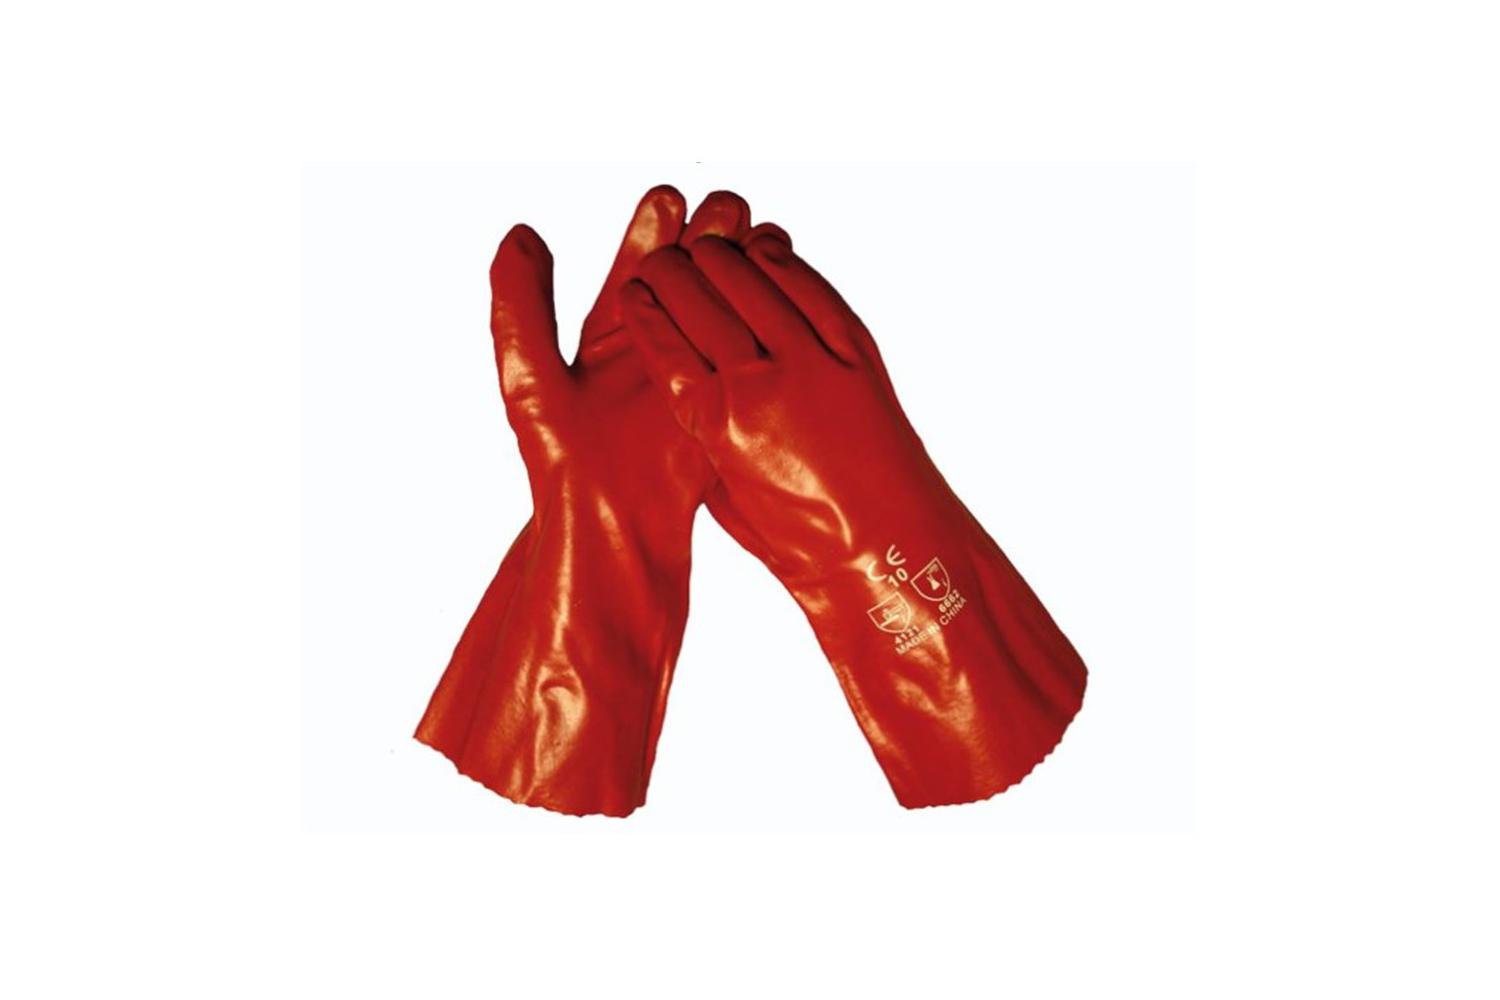 Rode schilderhandschoenen 35cm lang